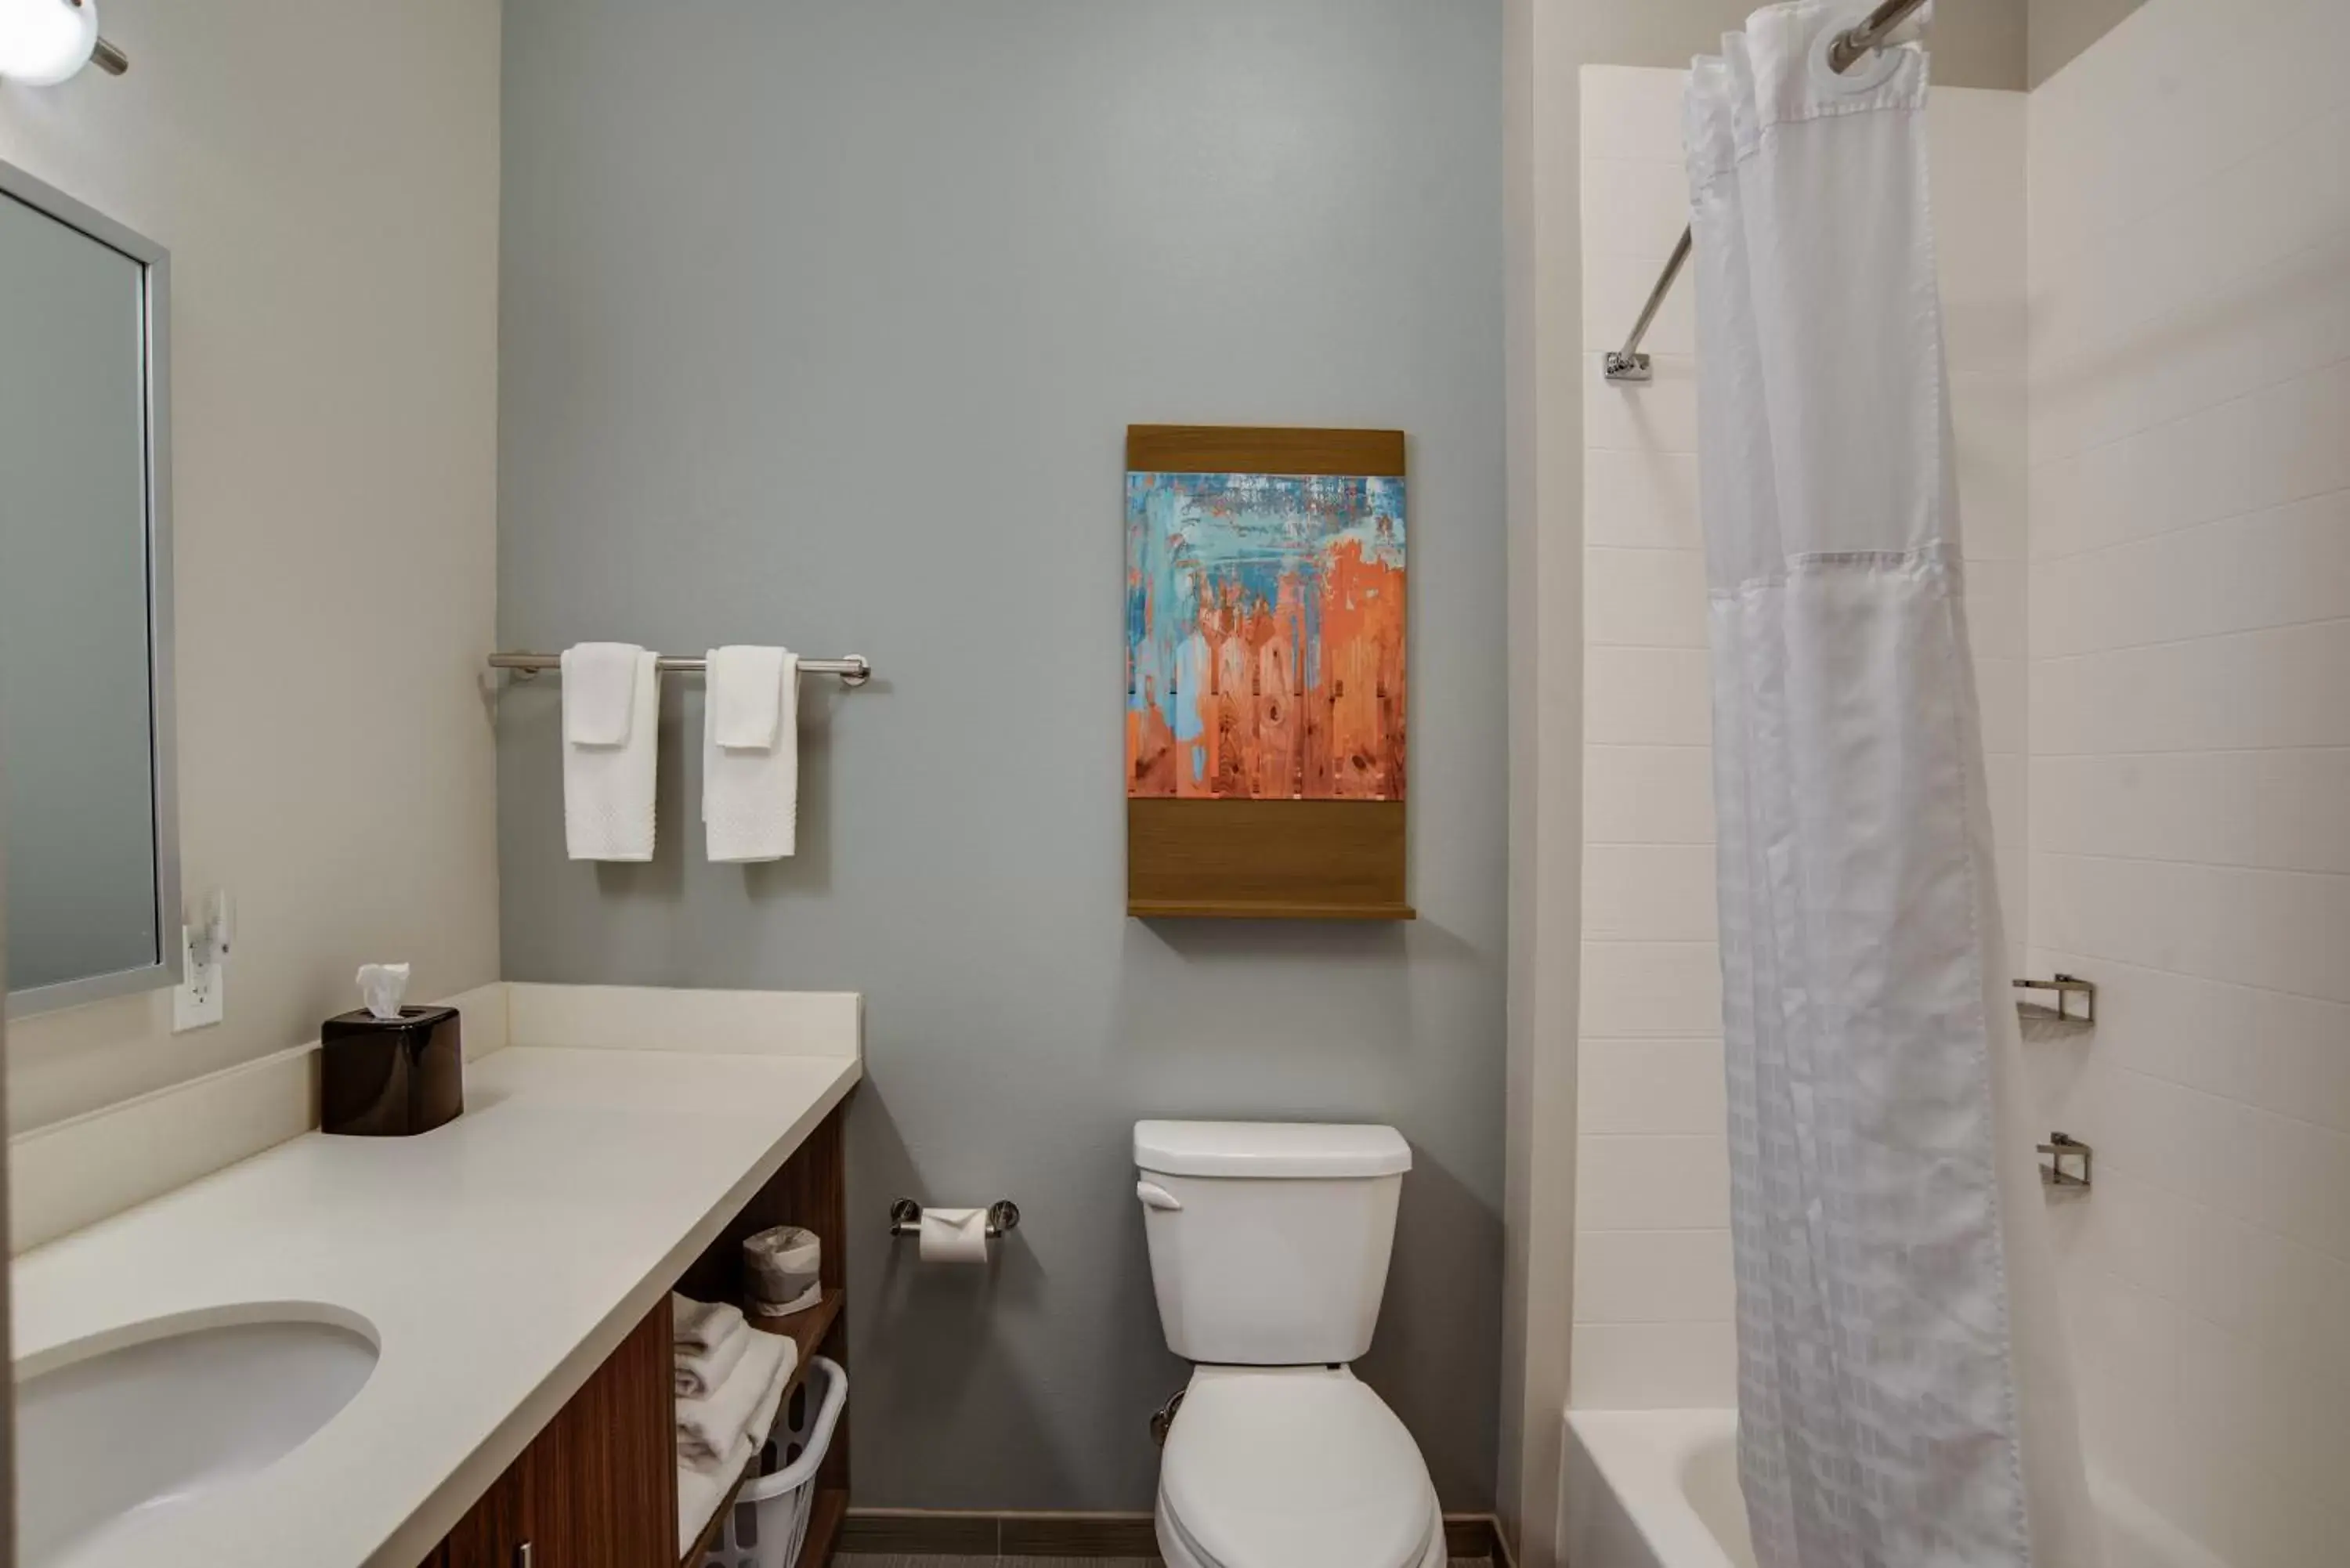 Toilet, Bathroom in MainStay Suites Carlisle - Harrisburg